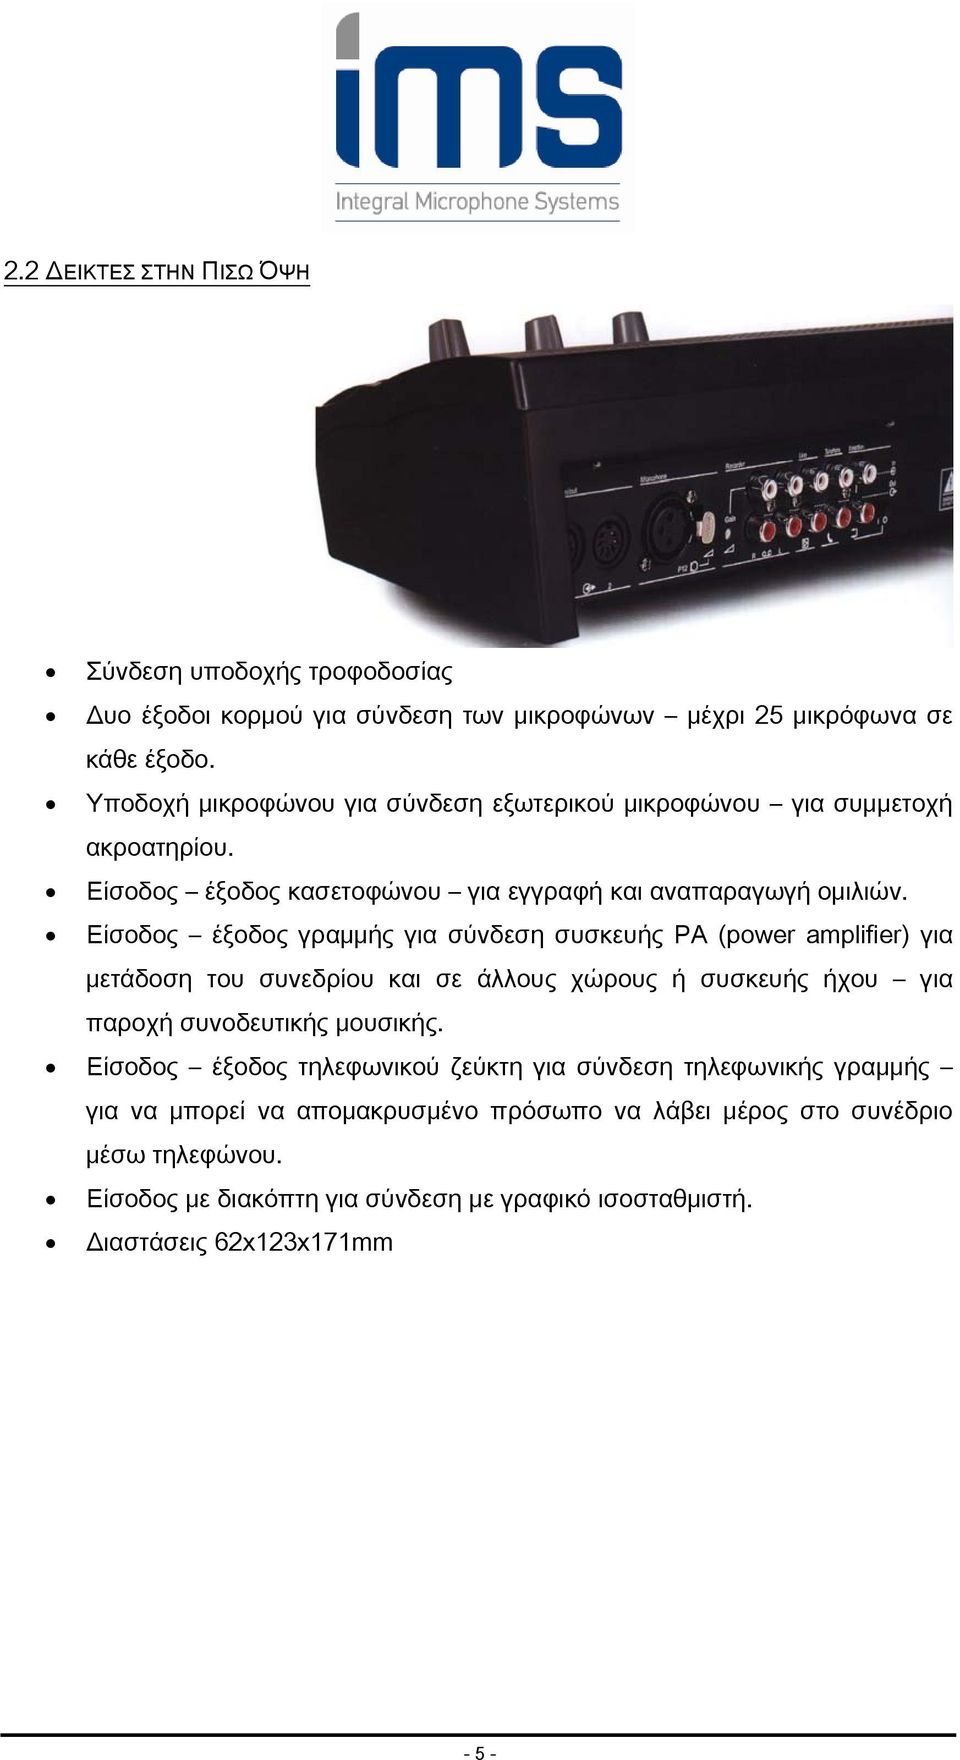 Είσοδος έξοδος γραμμής για σύνδεση συσκευής PA (power amplifier) για μετάδοση του συνεδρίου και σε άλλους χώρους ή συσκευής ήχου για παροχή συνοδευτικής μουσικής.